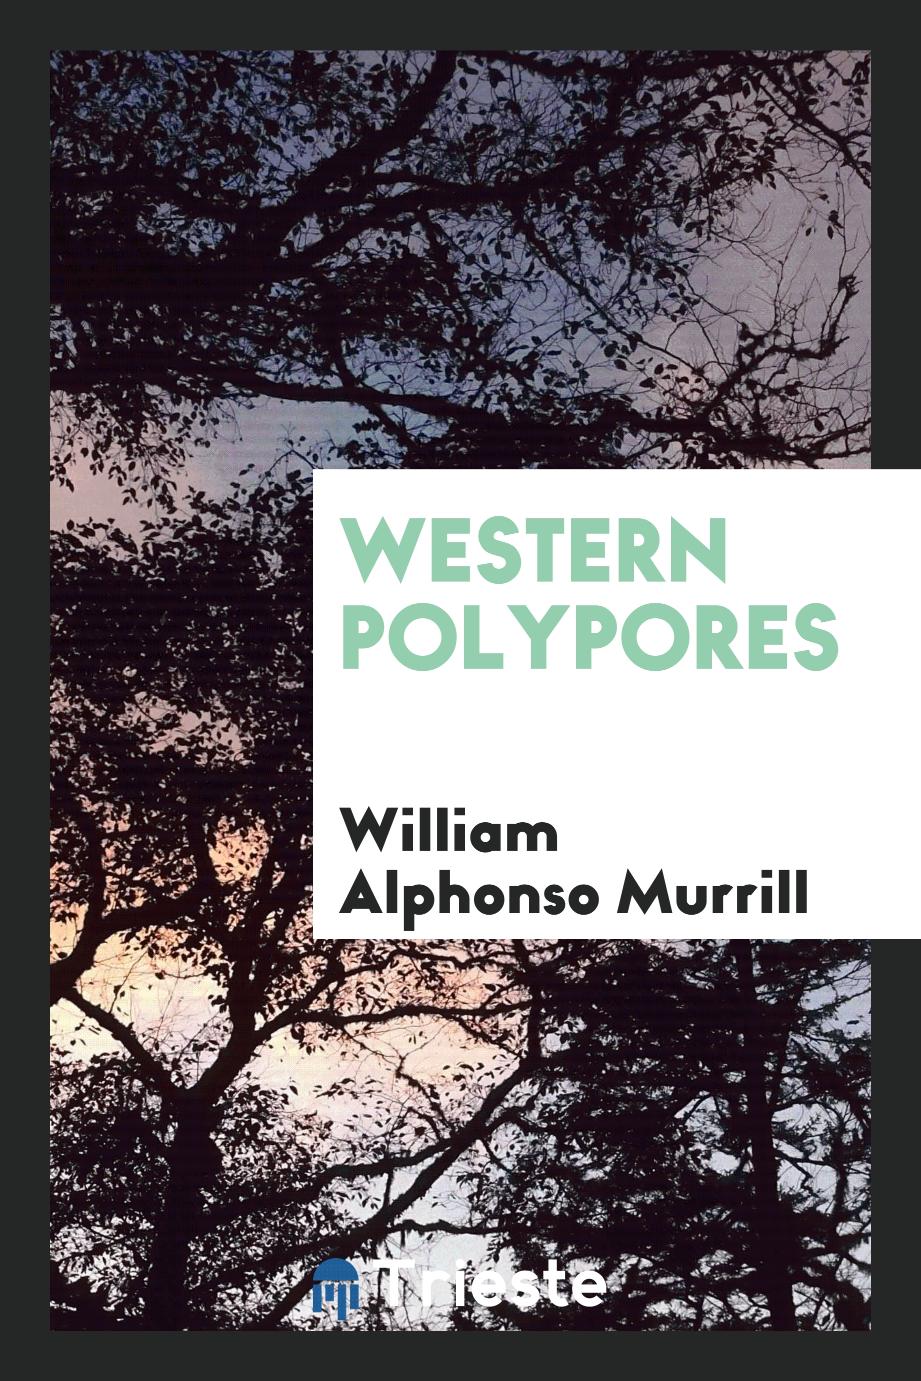 Western polypores